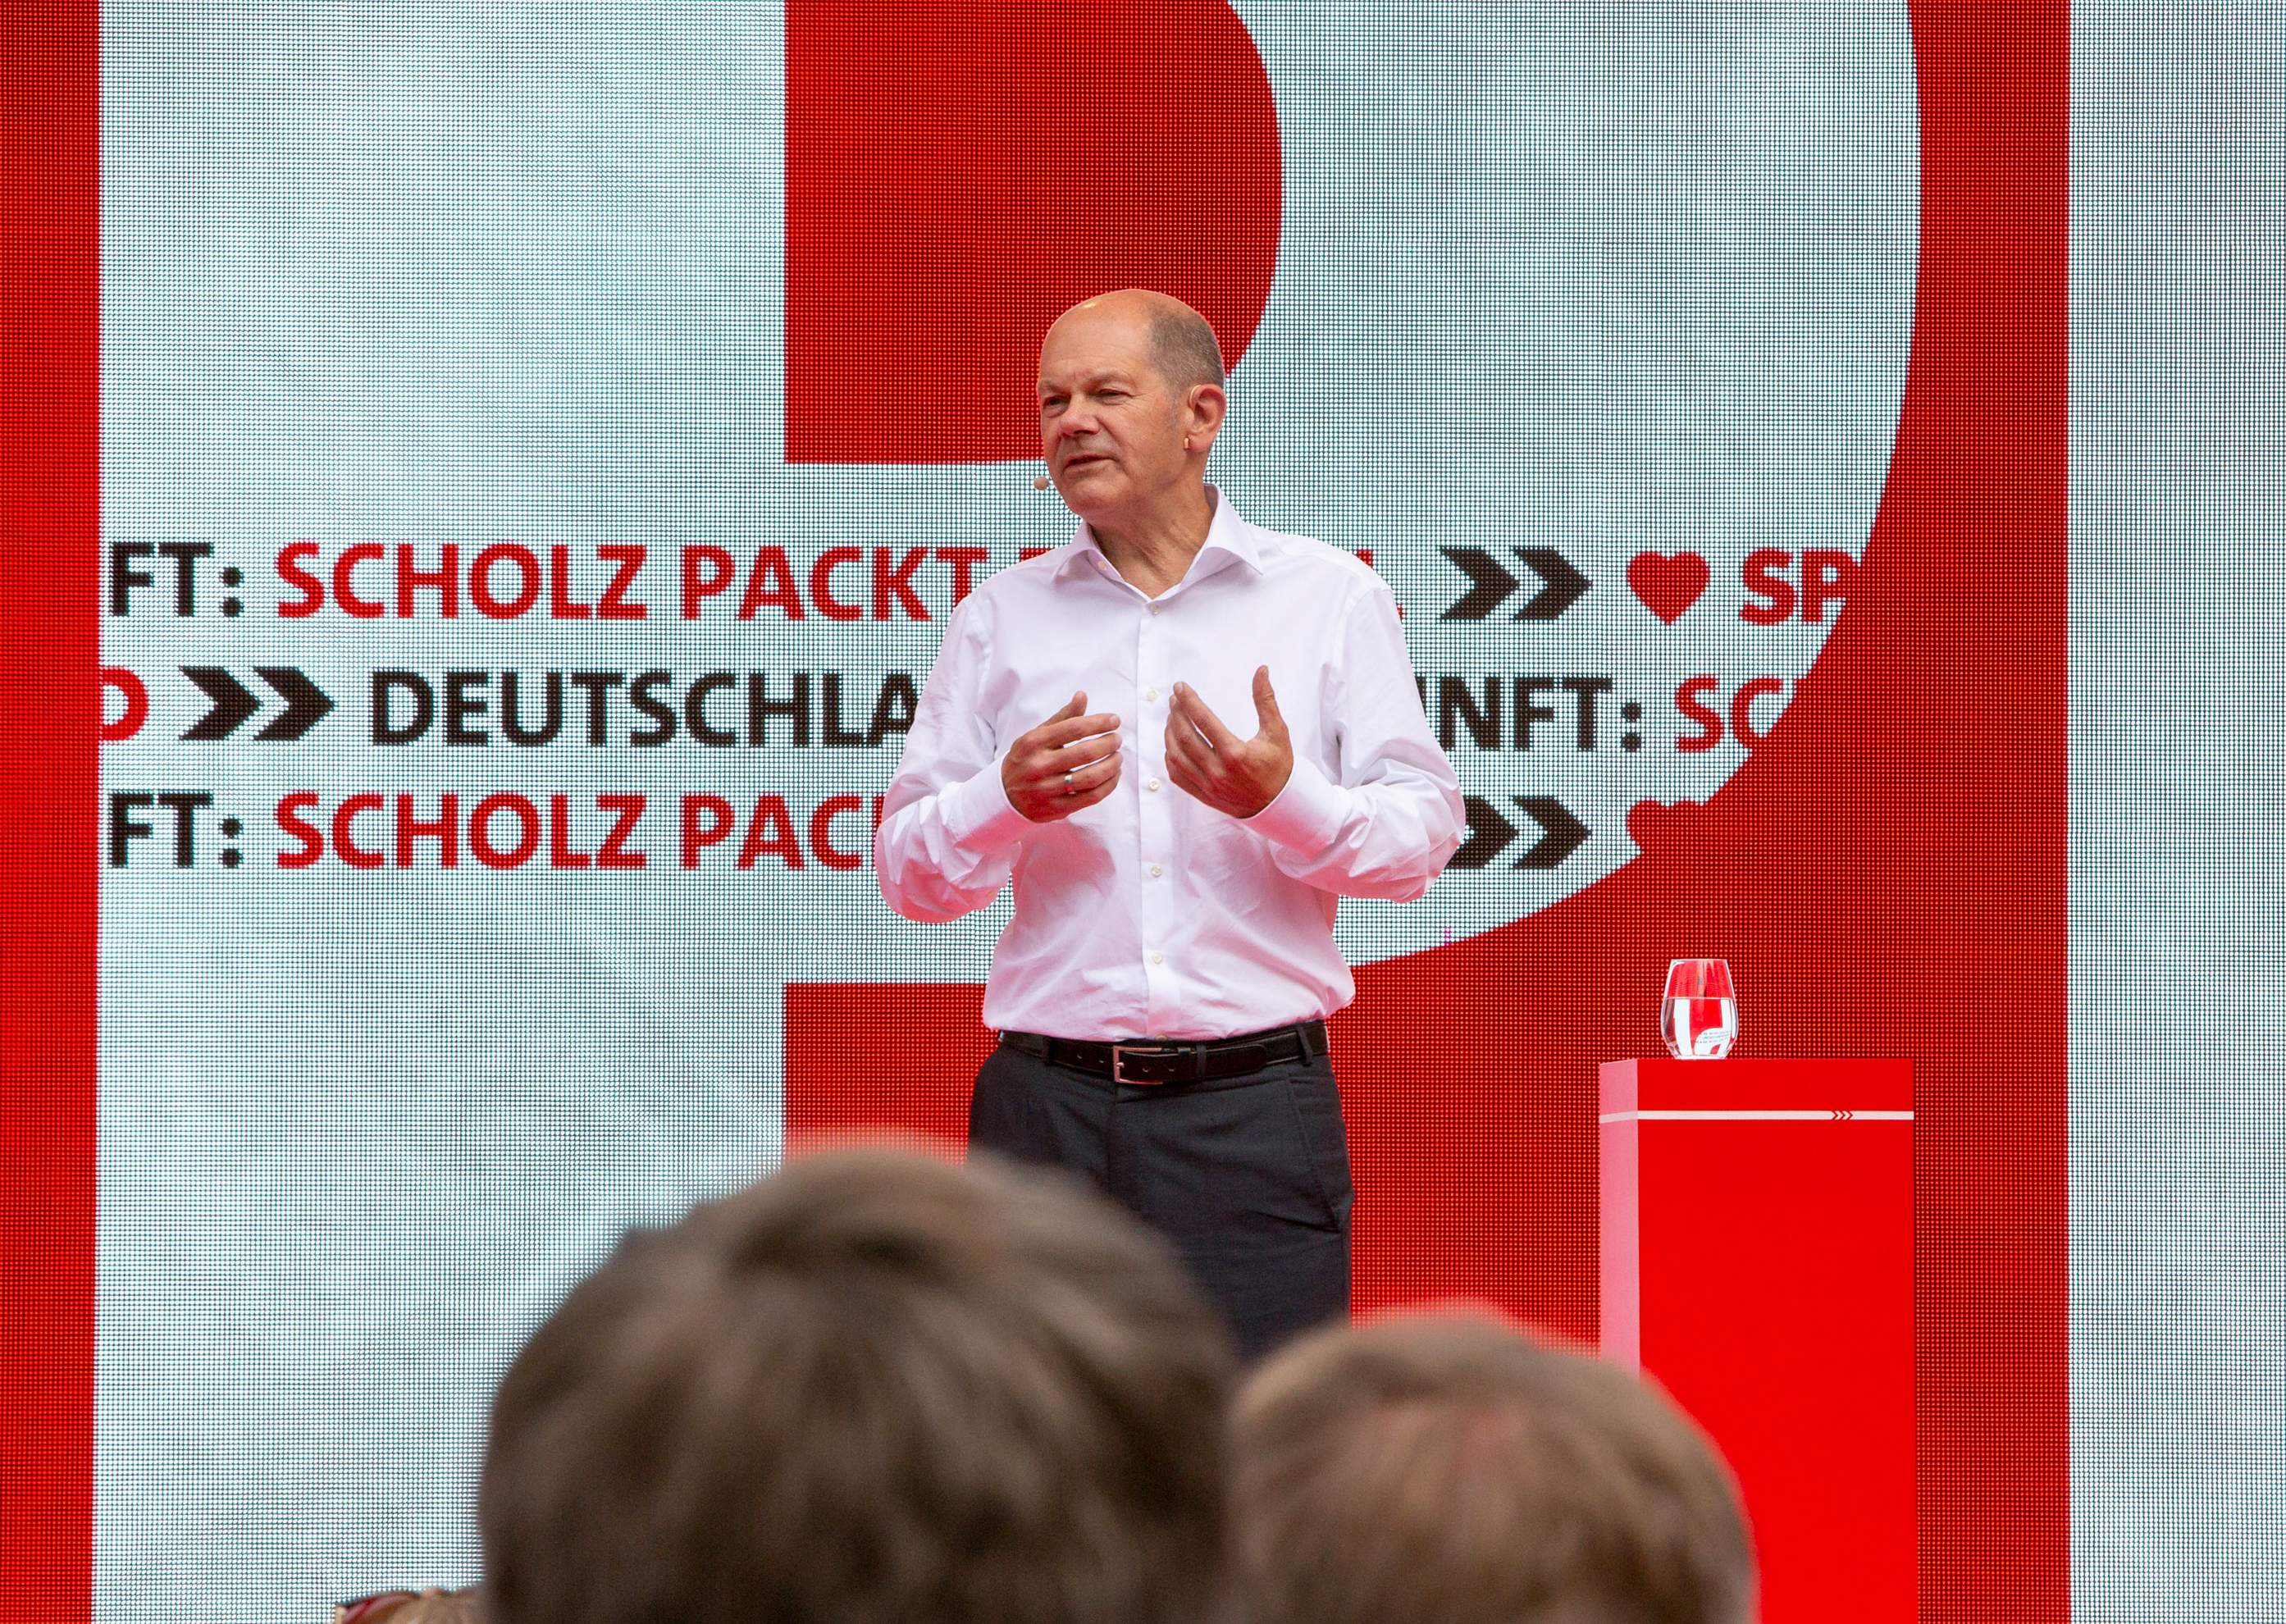 Alemanya acusa Rússia d'un ciberatac contra el partit socialdemòcrata del canceller Scholz